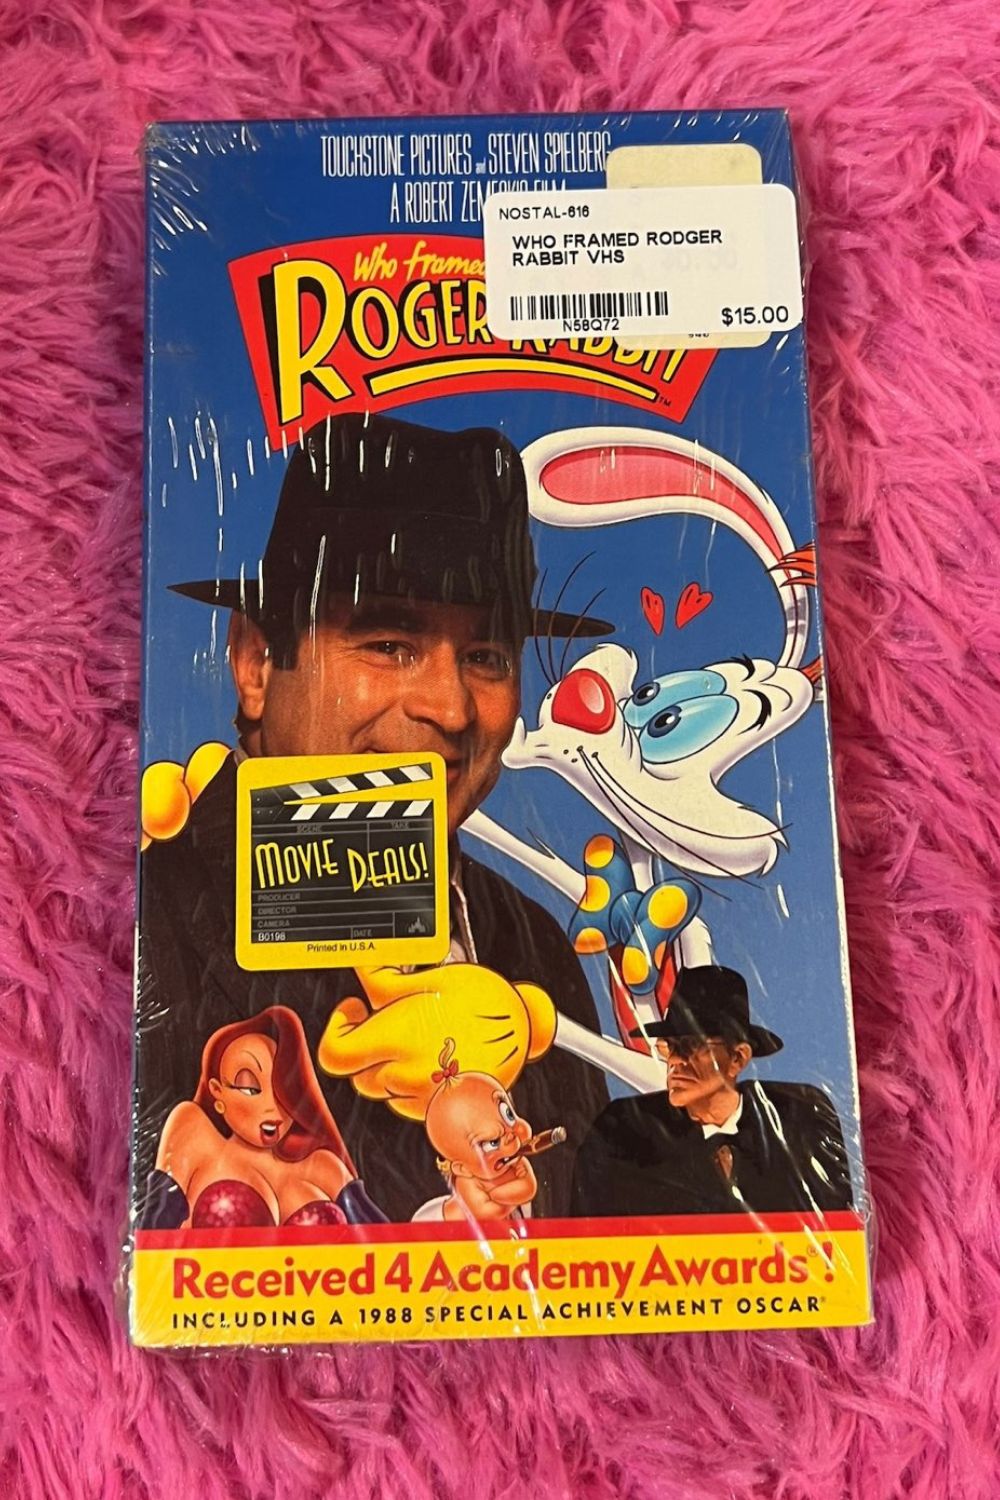 WHO FRAMED ROGER RABBIT VHS*